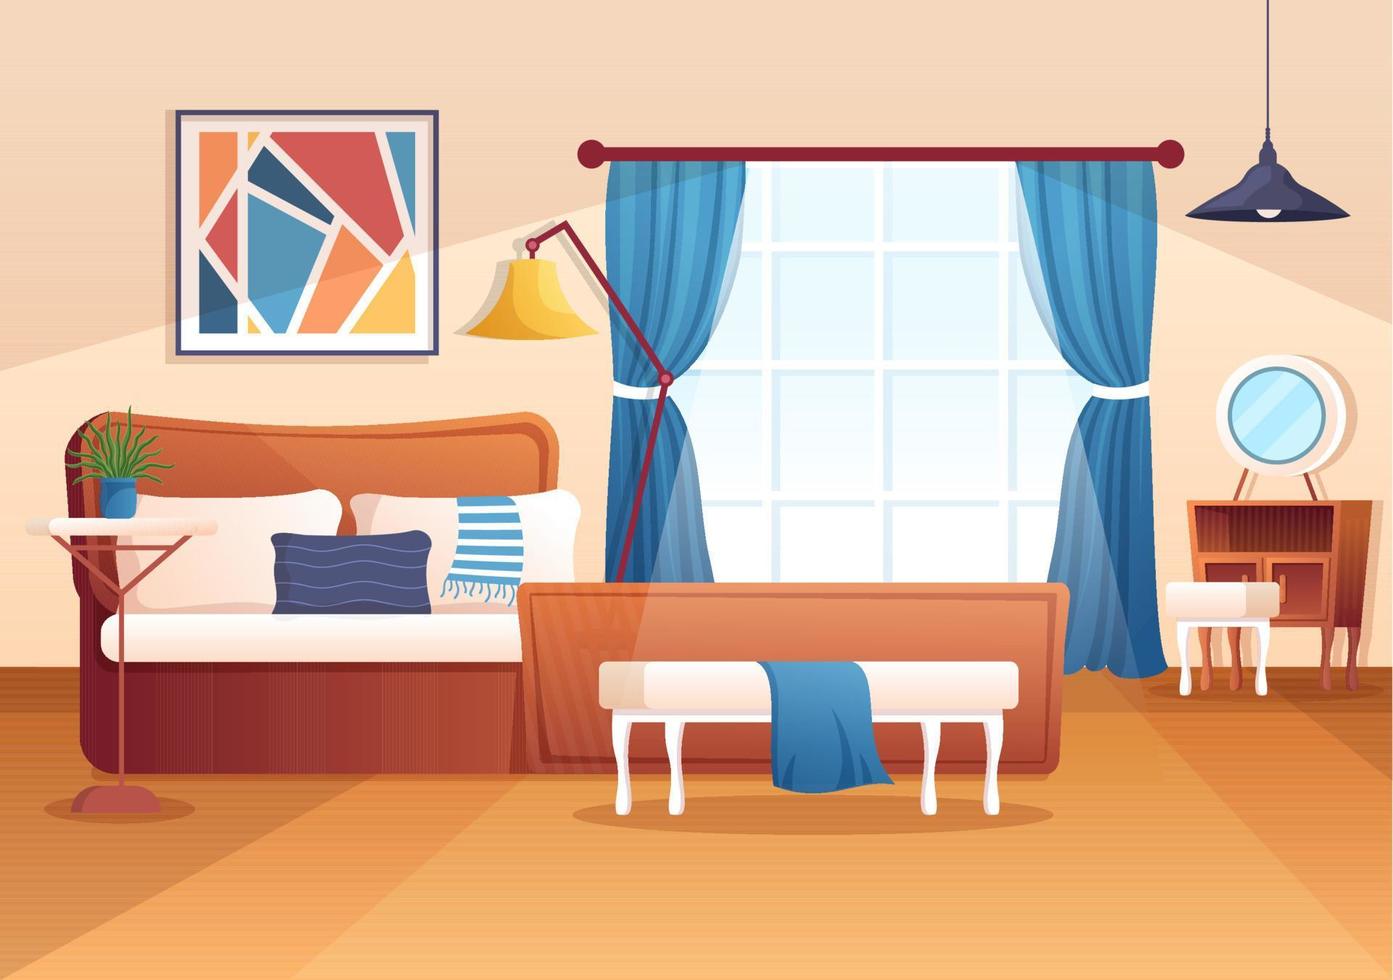 gemütliches schlafzimmerinterieur mit möbeln wie bett, kleiderschrank, nachttisch, vase, kronleuchter im modernen stil in karikaturvektorillustration vektor